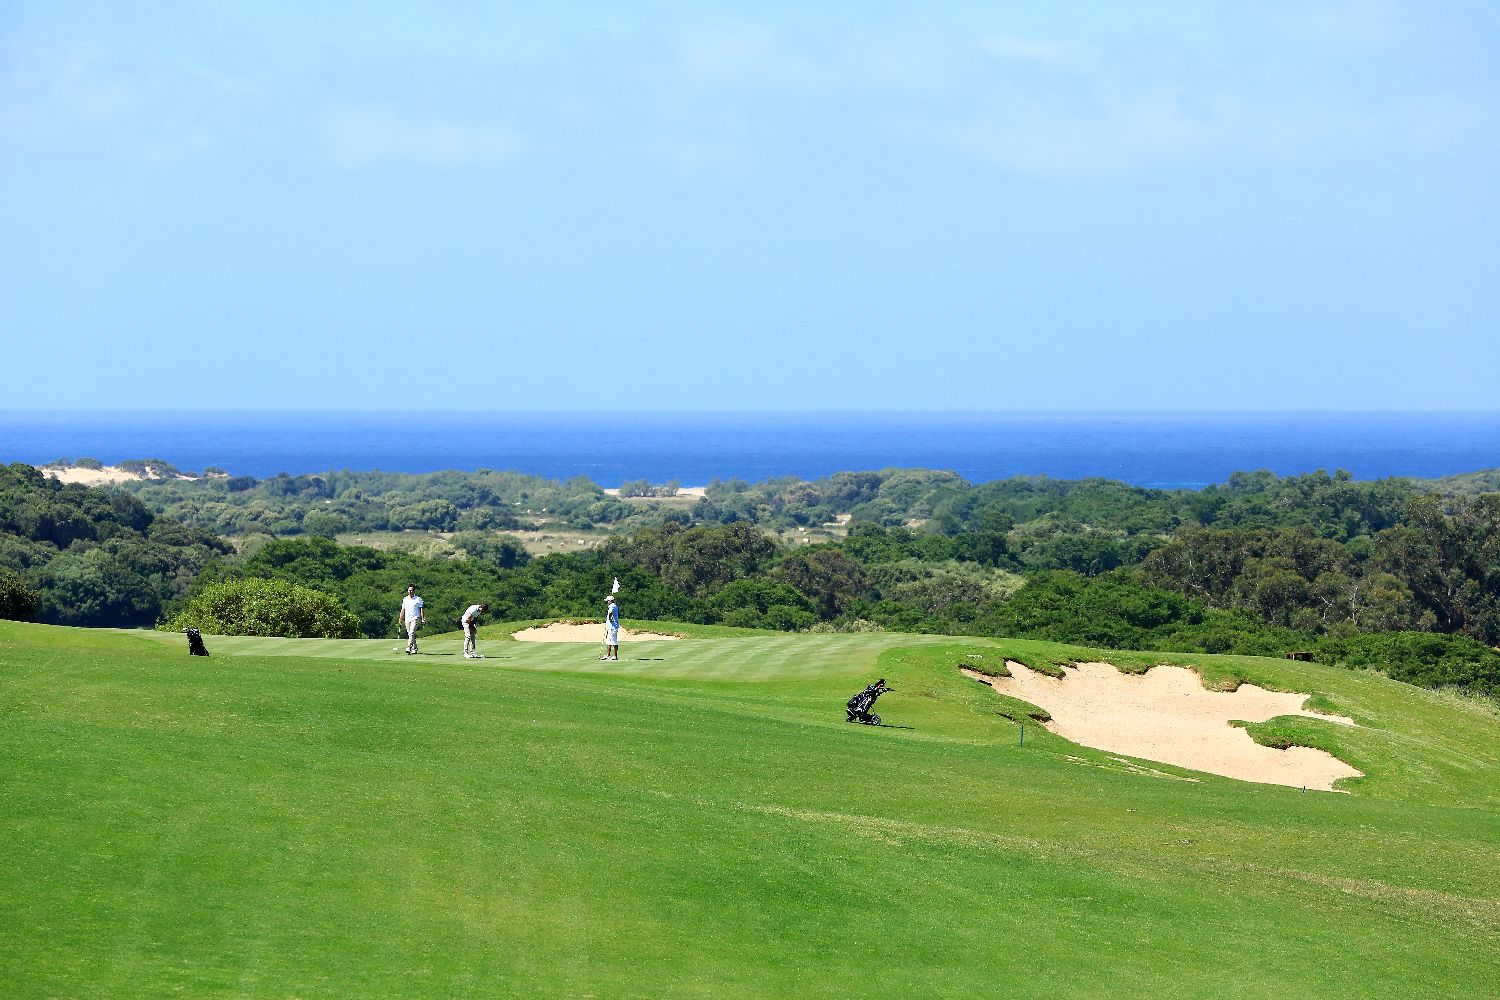 golf-expedition-golf-reizen-frankrijk-regio-corsica-domaine-de-murtoli-golfbaan-golfers-uitzicht-op-zee.jpg